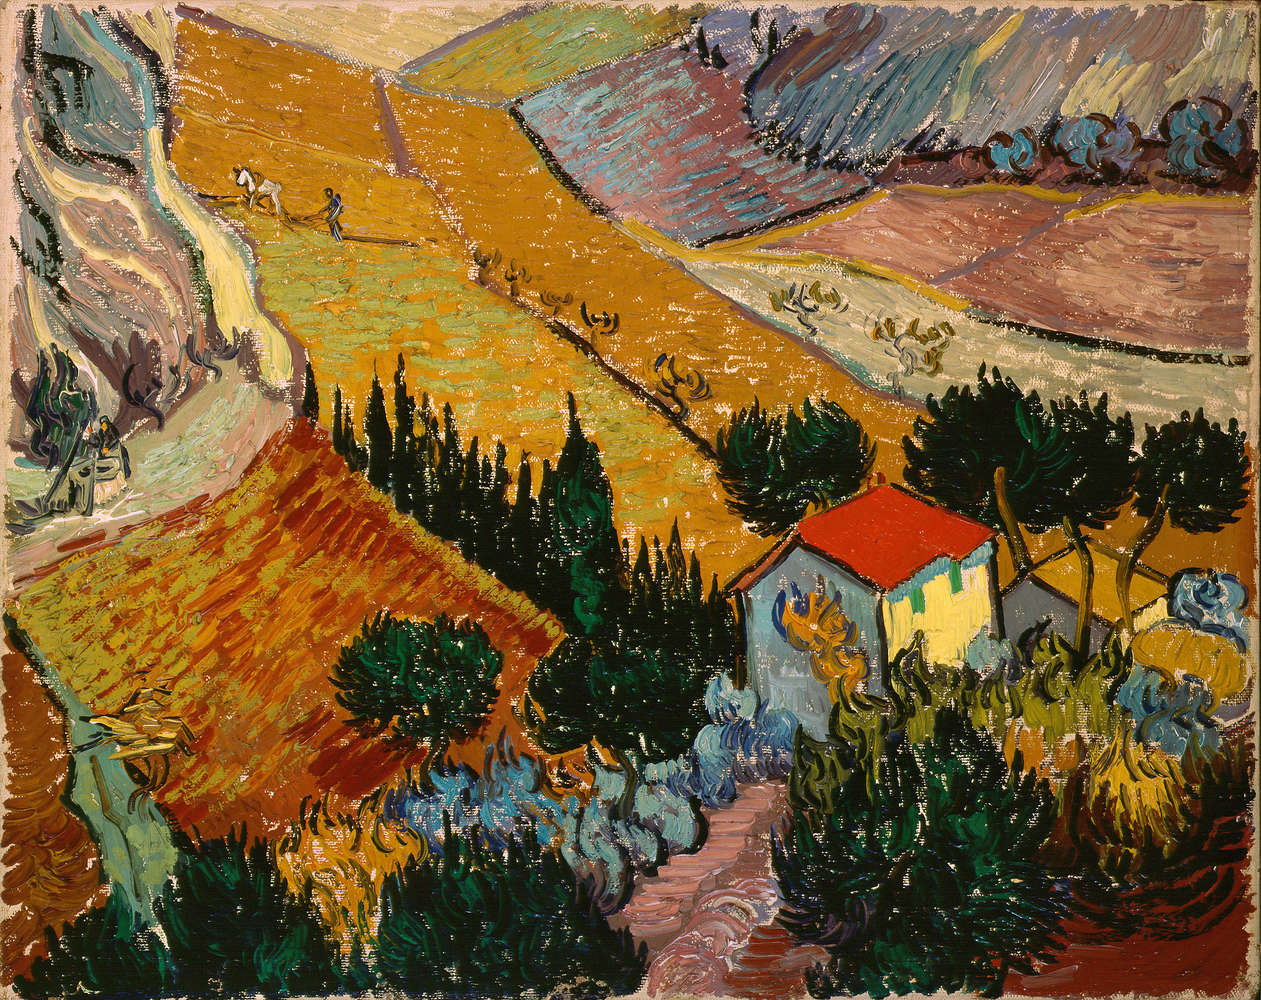             Landschap met huis en ploeger" muurschildering van Vincent van Gogh
        